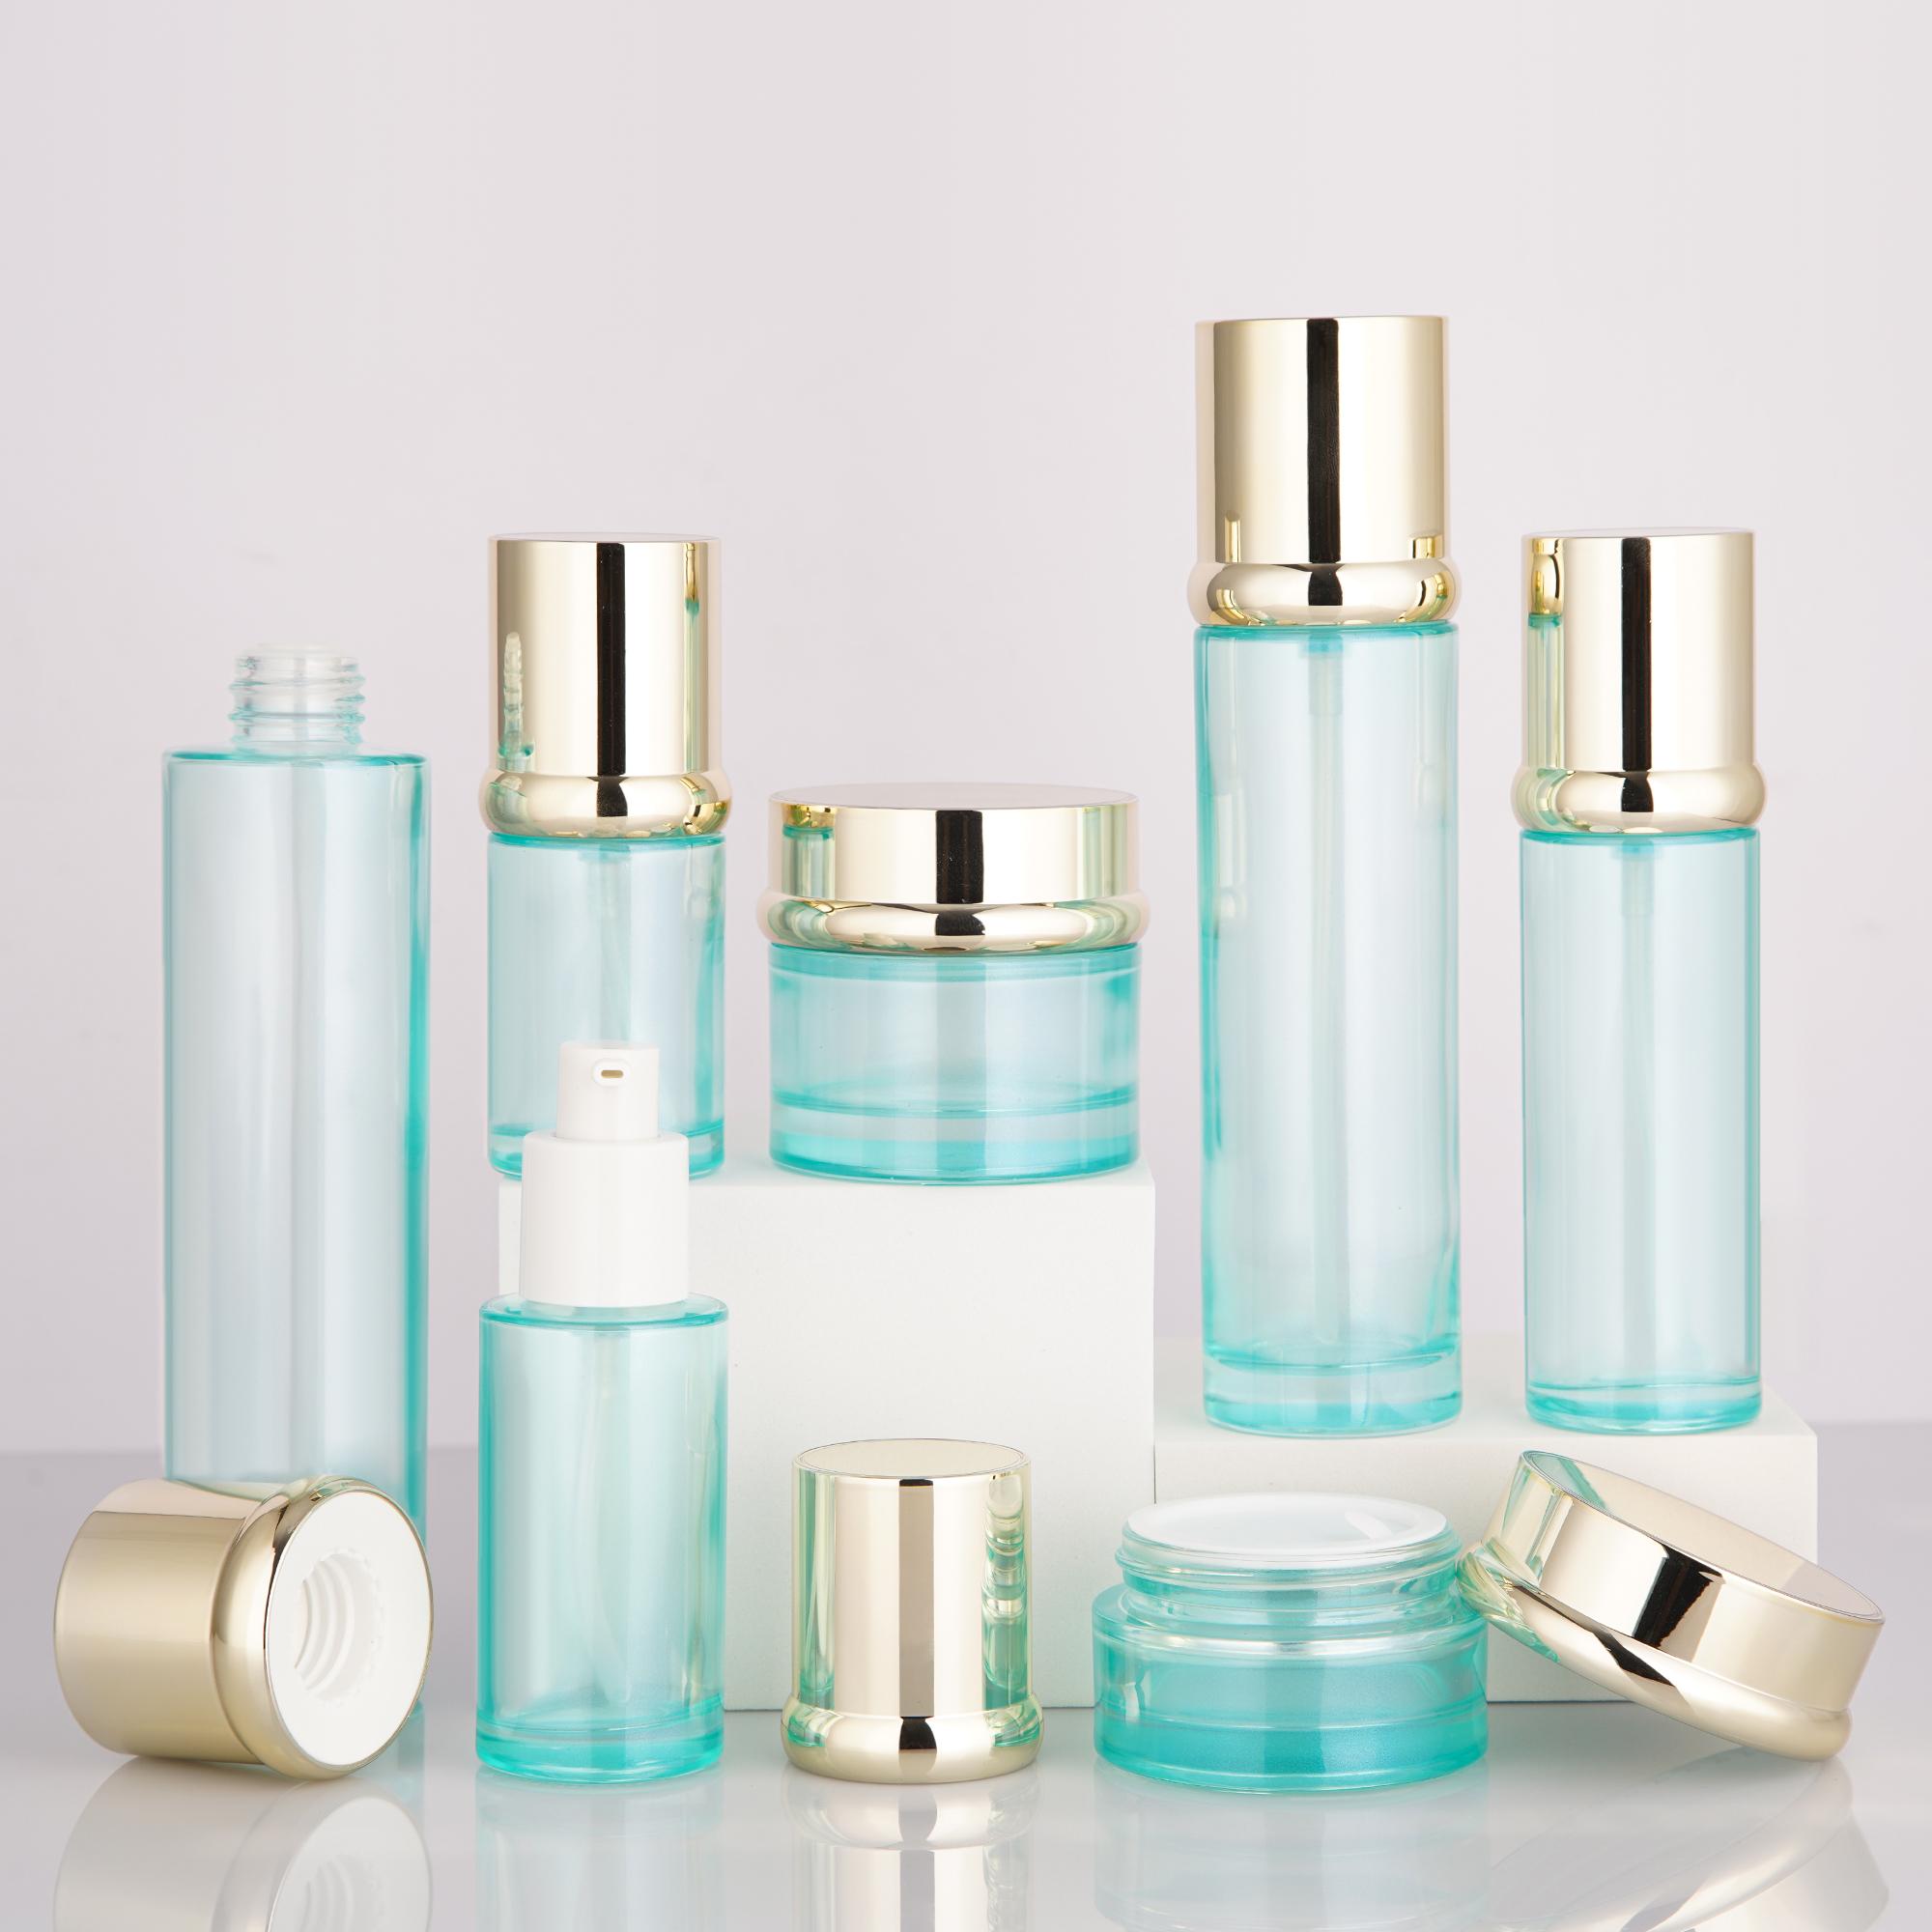 突破常规的化妆品玻璃瓶设计让你的产品包装多亿点点新意